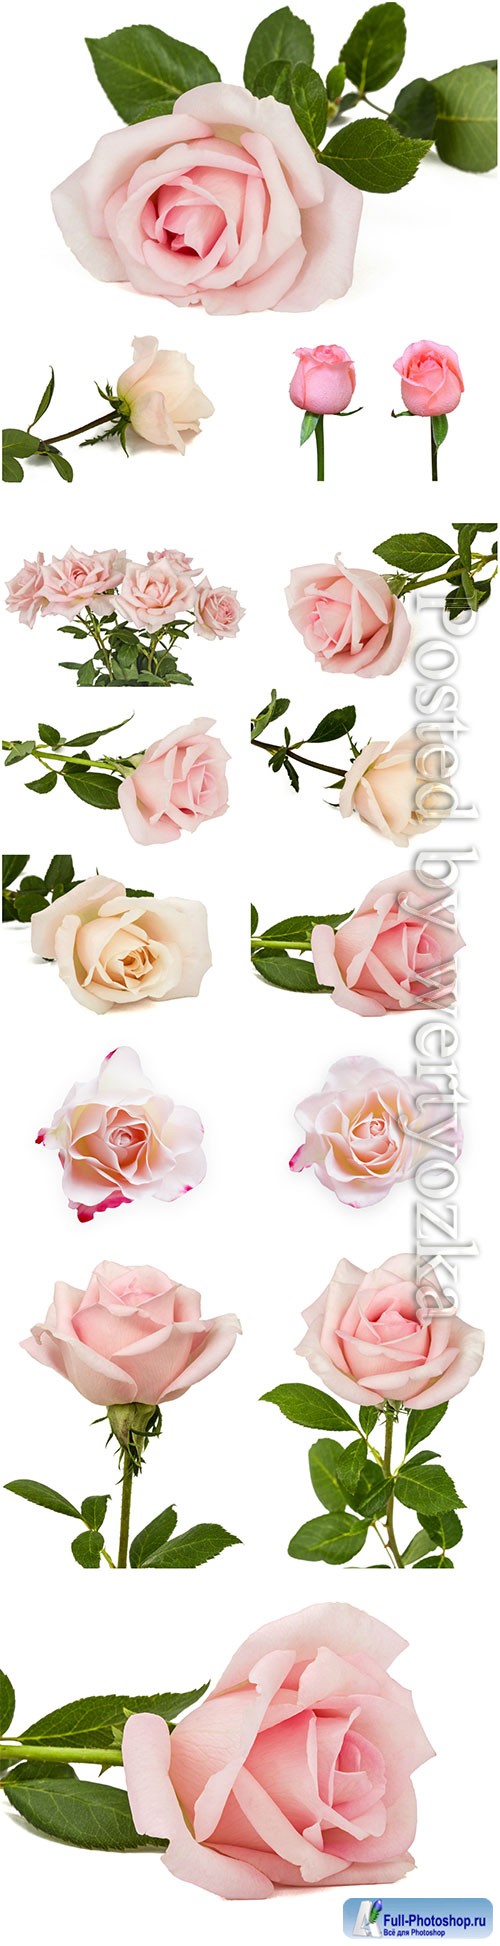 Luxury roses on white background stock photo